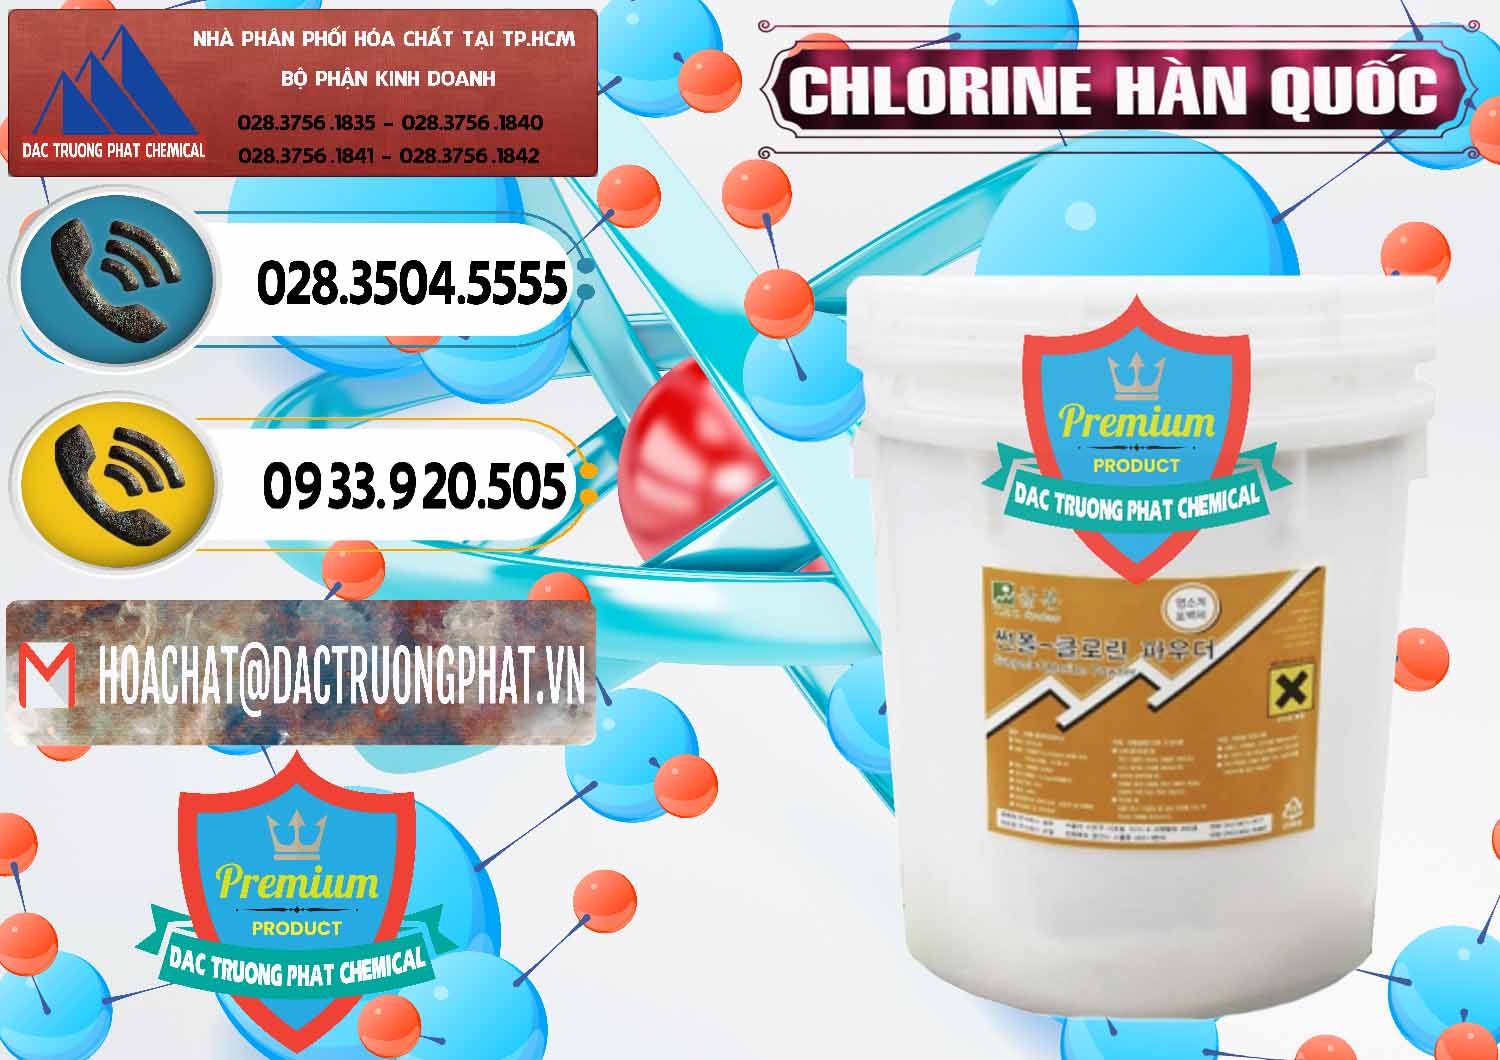 Cty chuyên bán và cung cấp Chlorine – Clorin 70% Hàn Quốc Korea - 0345 - Kinh doanh - cung cấp hóa chất tại TP.HCM - hoachatdetnhuom.vn